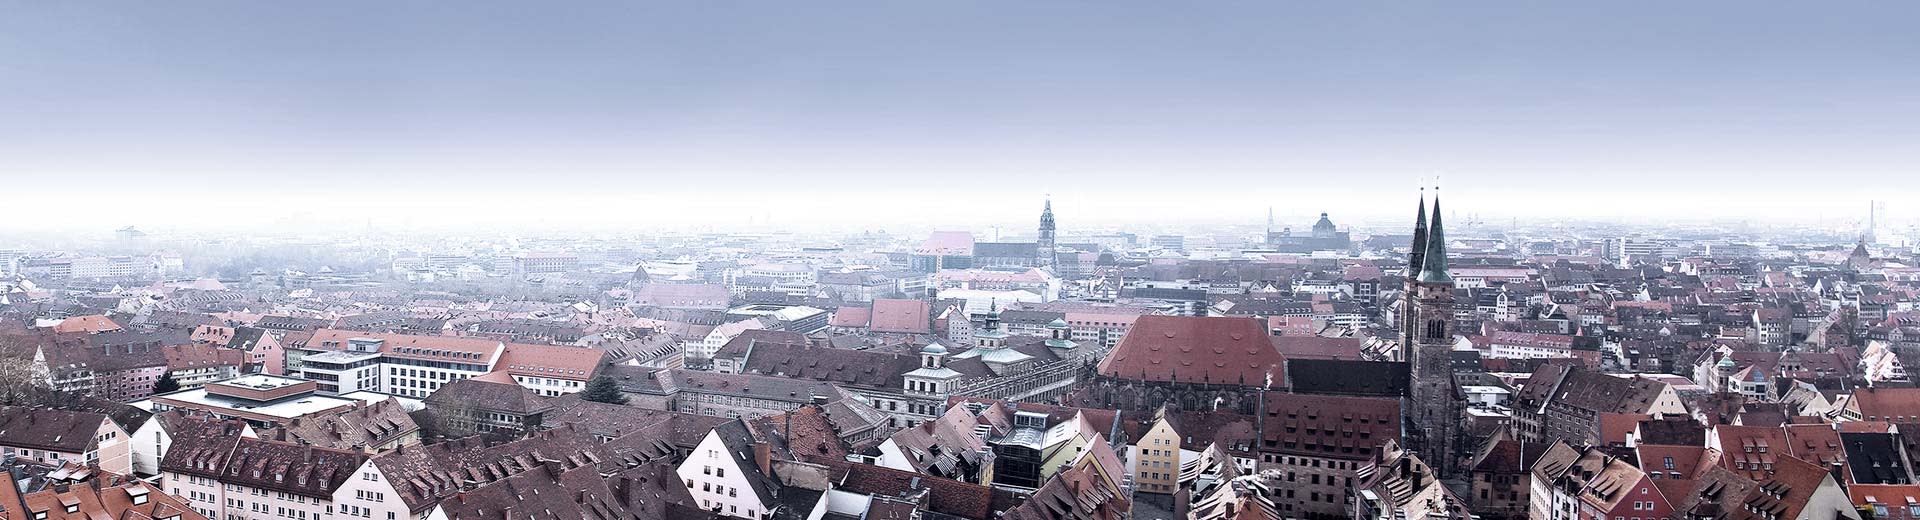 歴史あるニュルンベルクの赤い屋根と教会の尖塔。